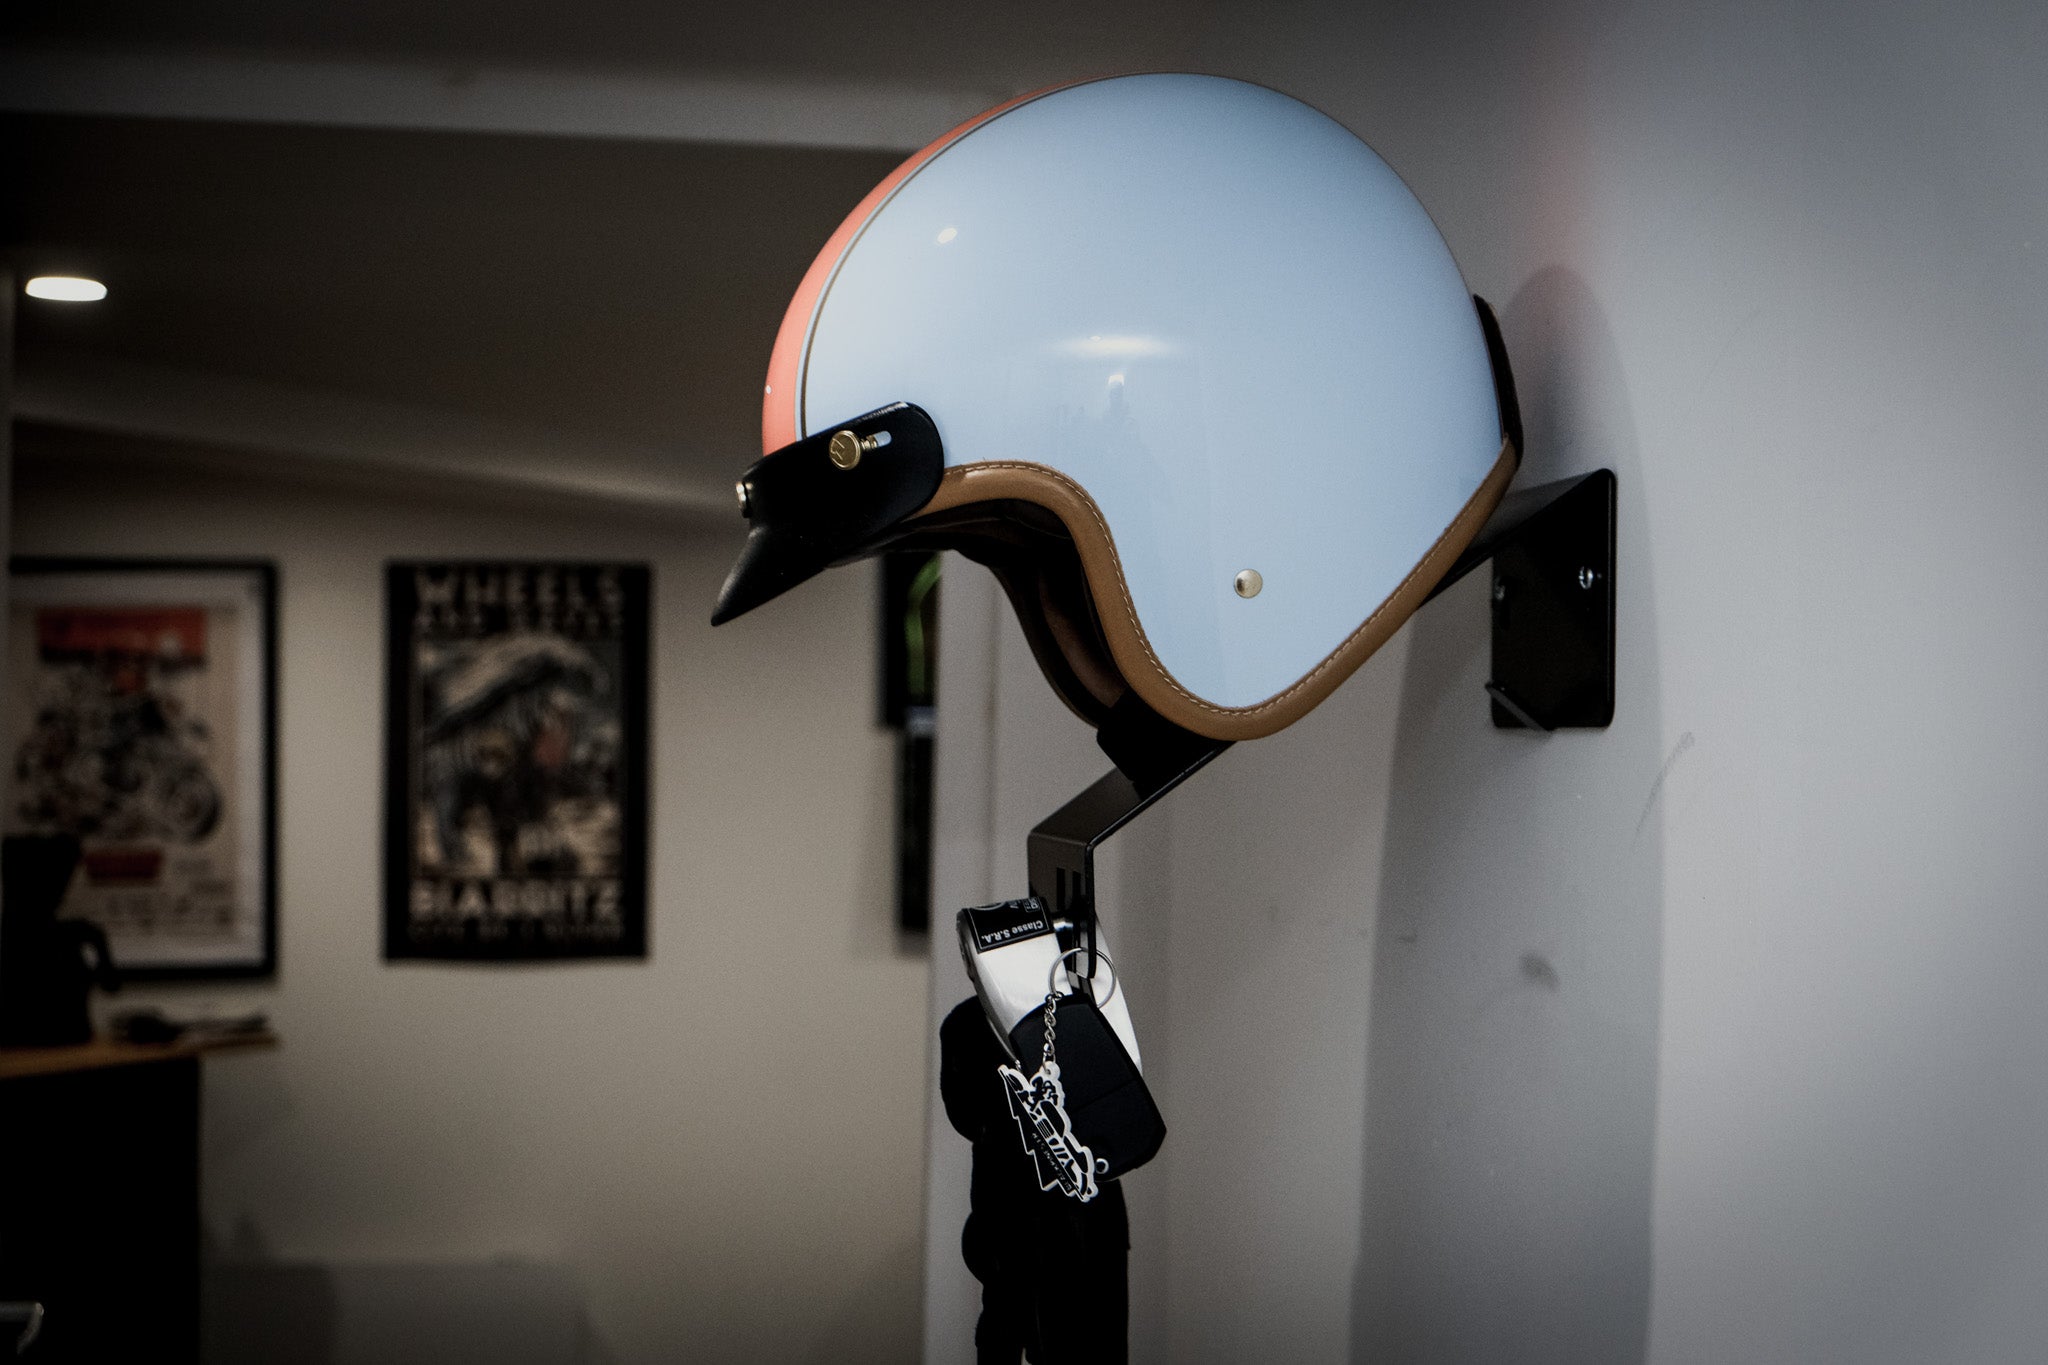 Blackpines helmet support with jet helmet.